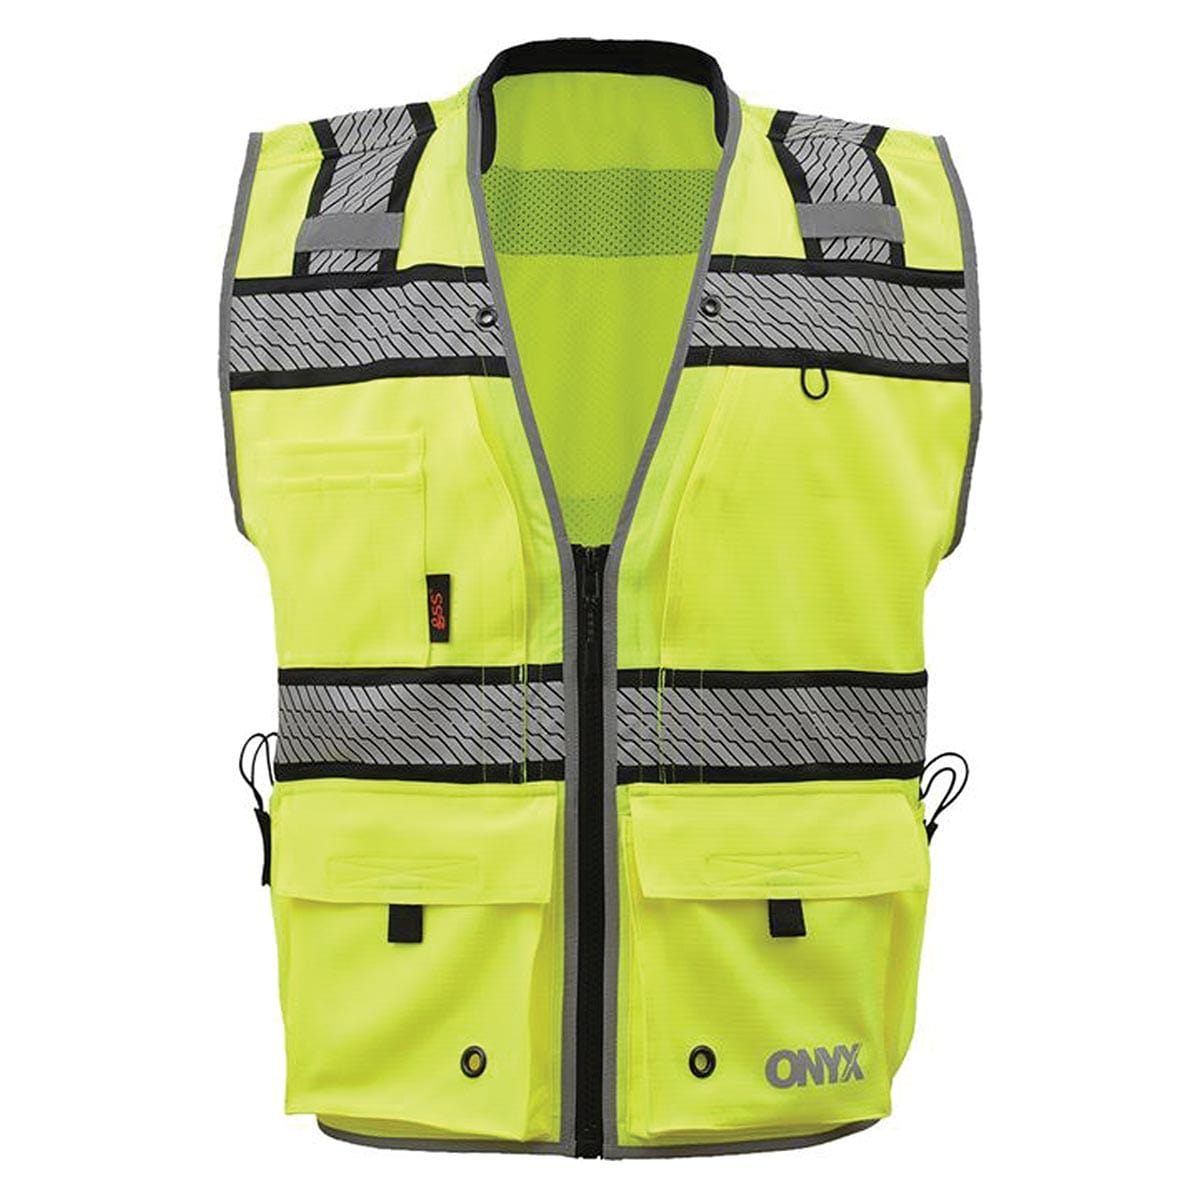 GSS Safety ANSI 2 ONYX Surveyor's Hi-Vis Safety Vest